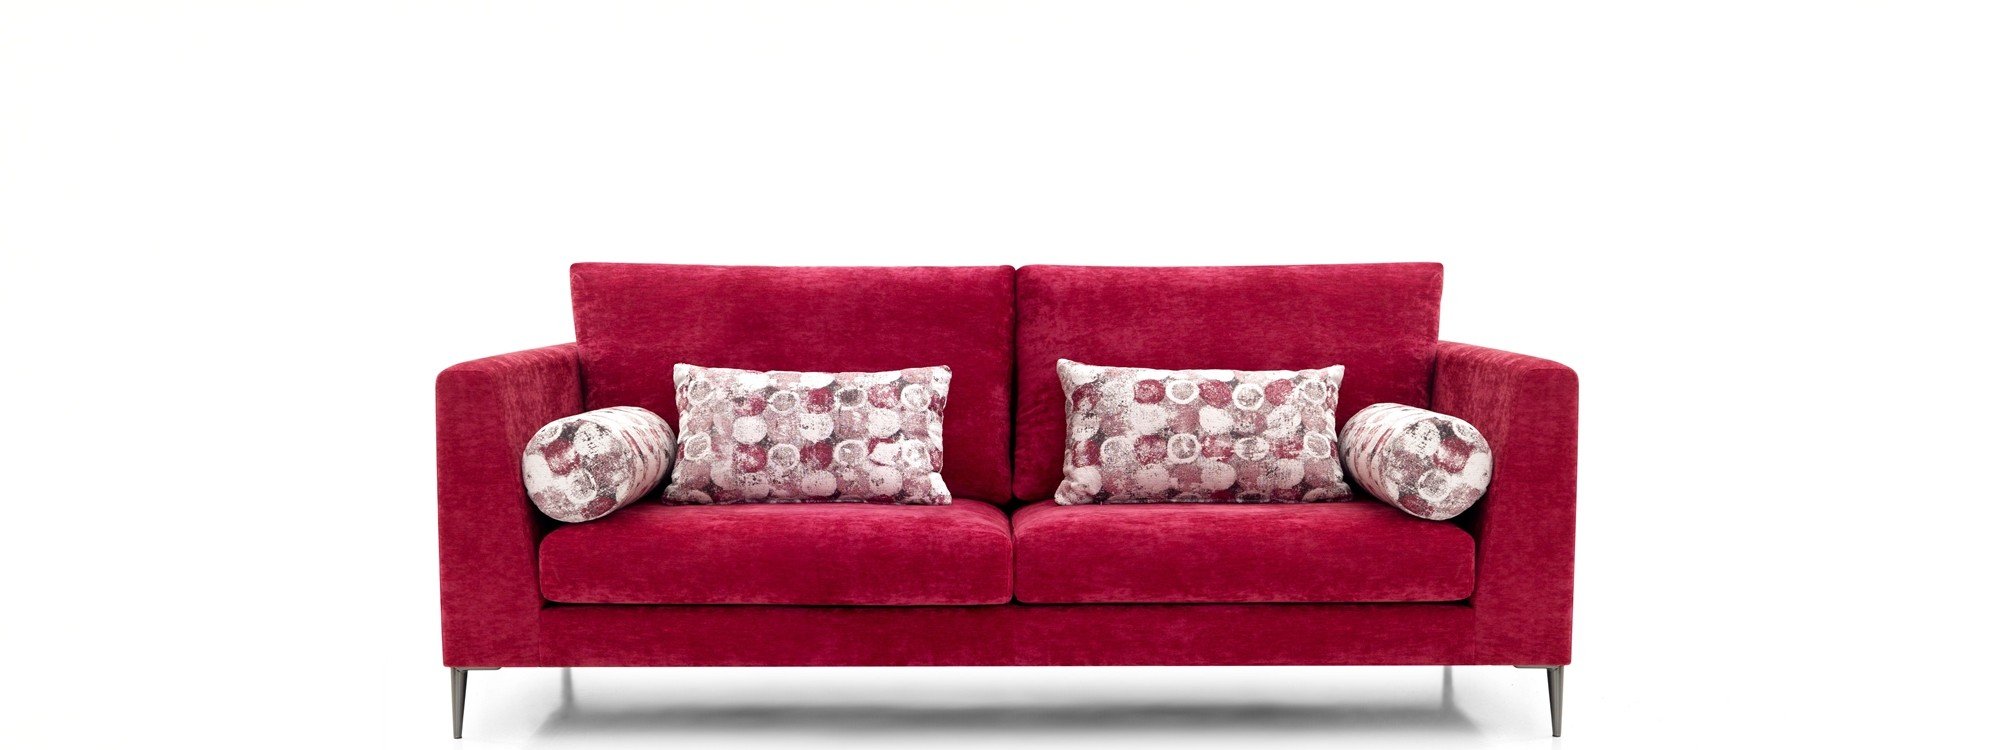 Sofás con asientos fijos de calidad y estilo vanguardista